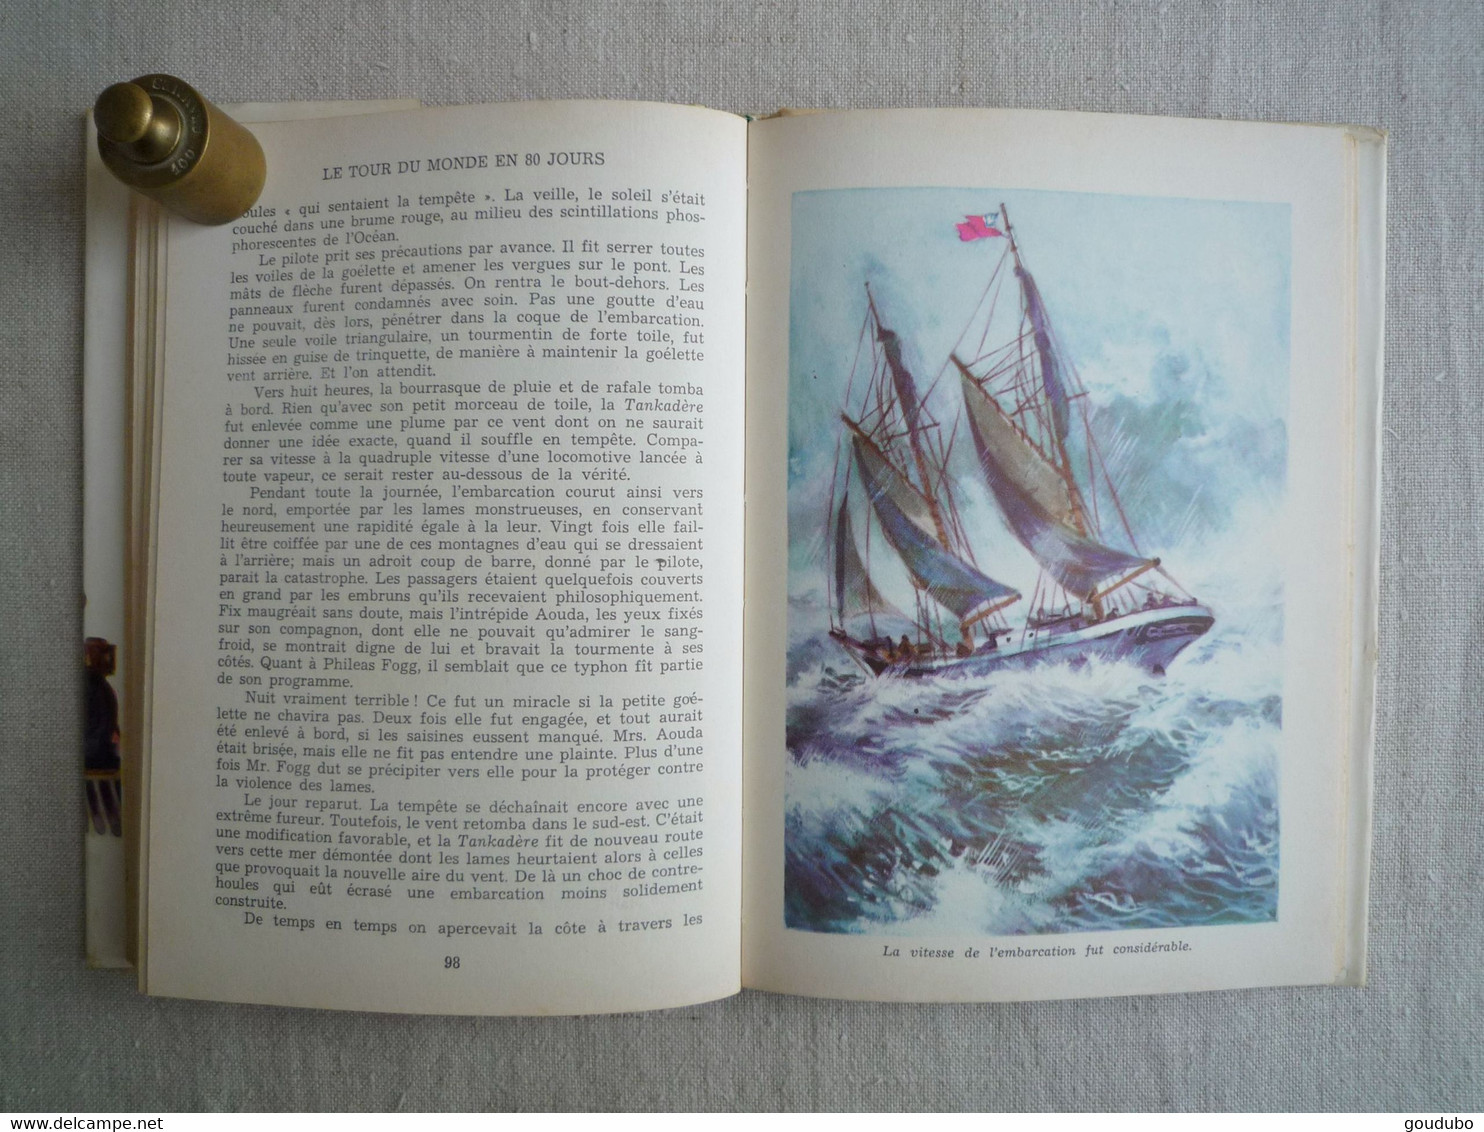 Jules Verne Le tour du monde en 80 jours Hachette 1957 Henri Dimpre Idéal bibliothèque.